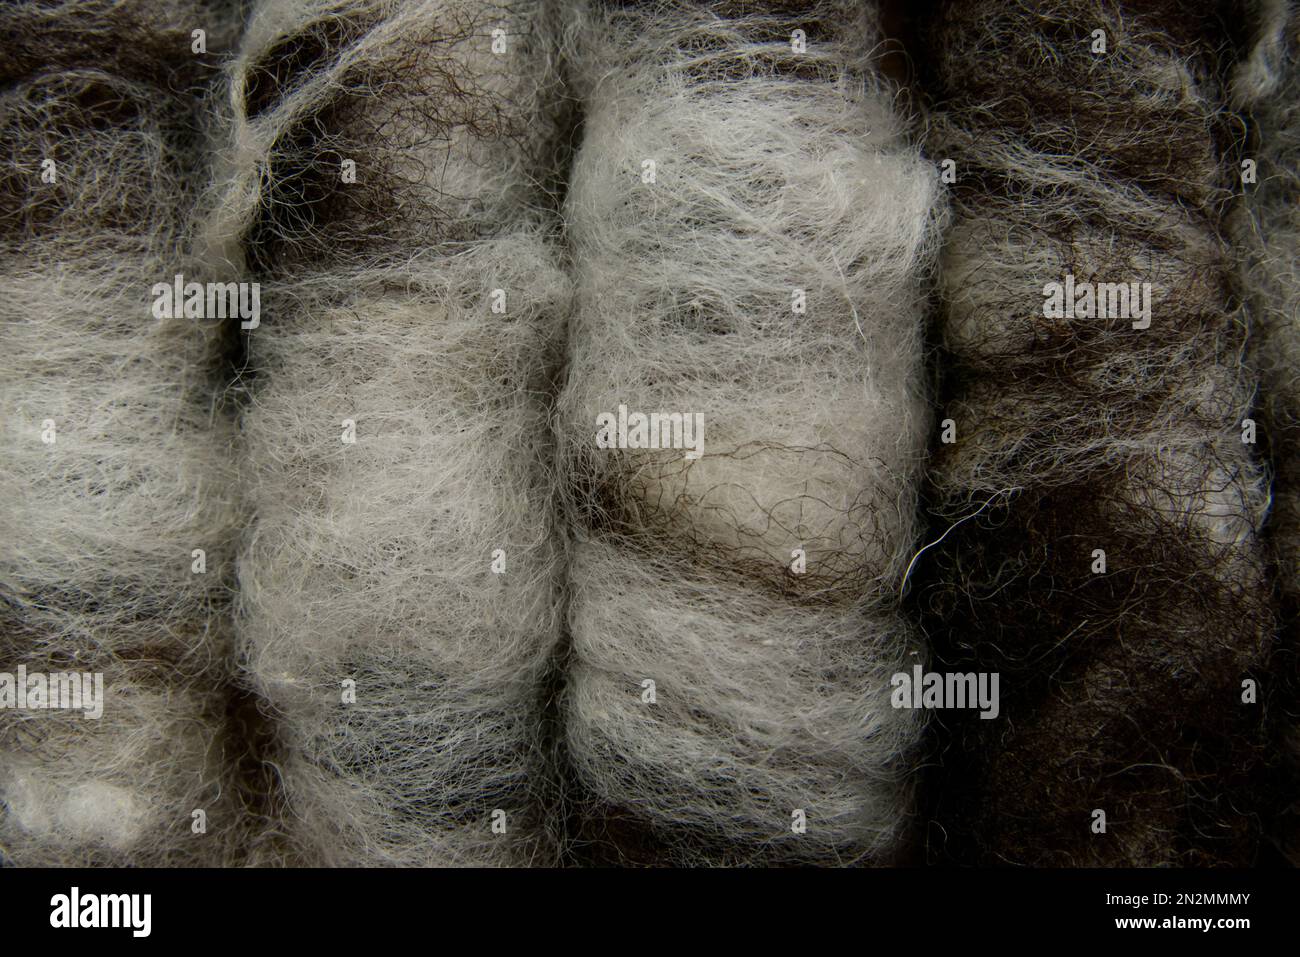 Gros plan de rolags de laine de mouton brune et blanche, disposés les uns à côté des autres. Couleurs neutres et naturelles. Banque D'Images